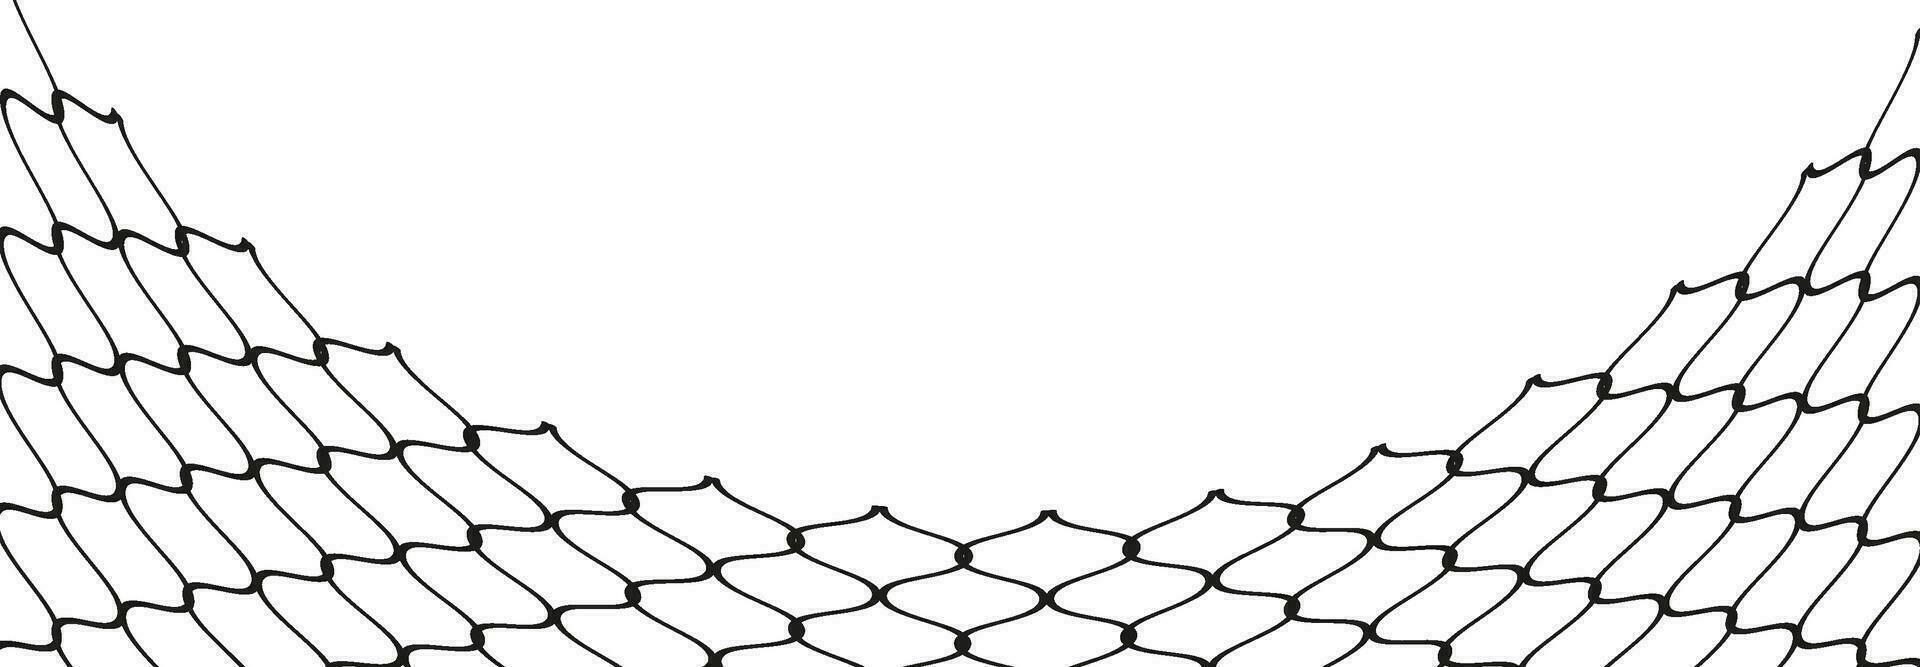 ilustración de un negro pescar o fútbol americano net.a cuadros ondulado antecedentes en garabatear estilo. vector